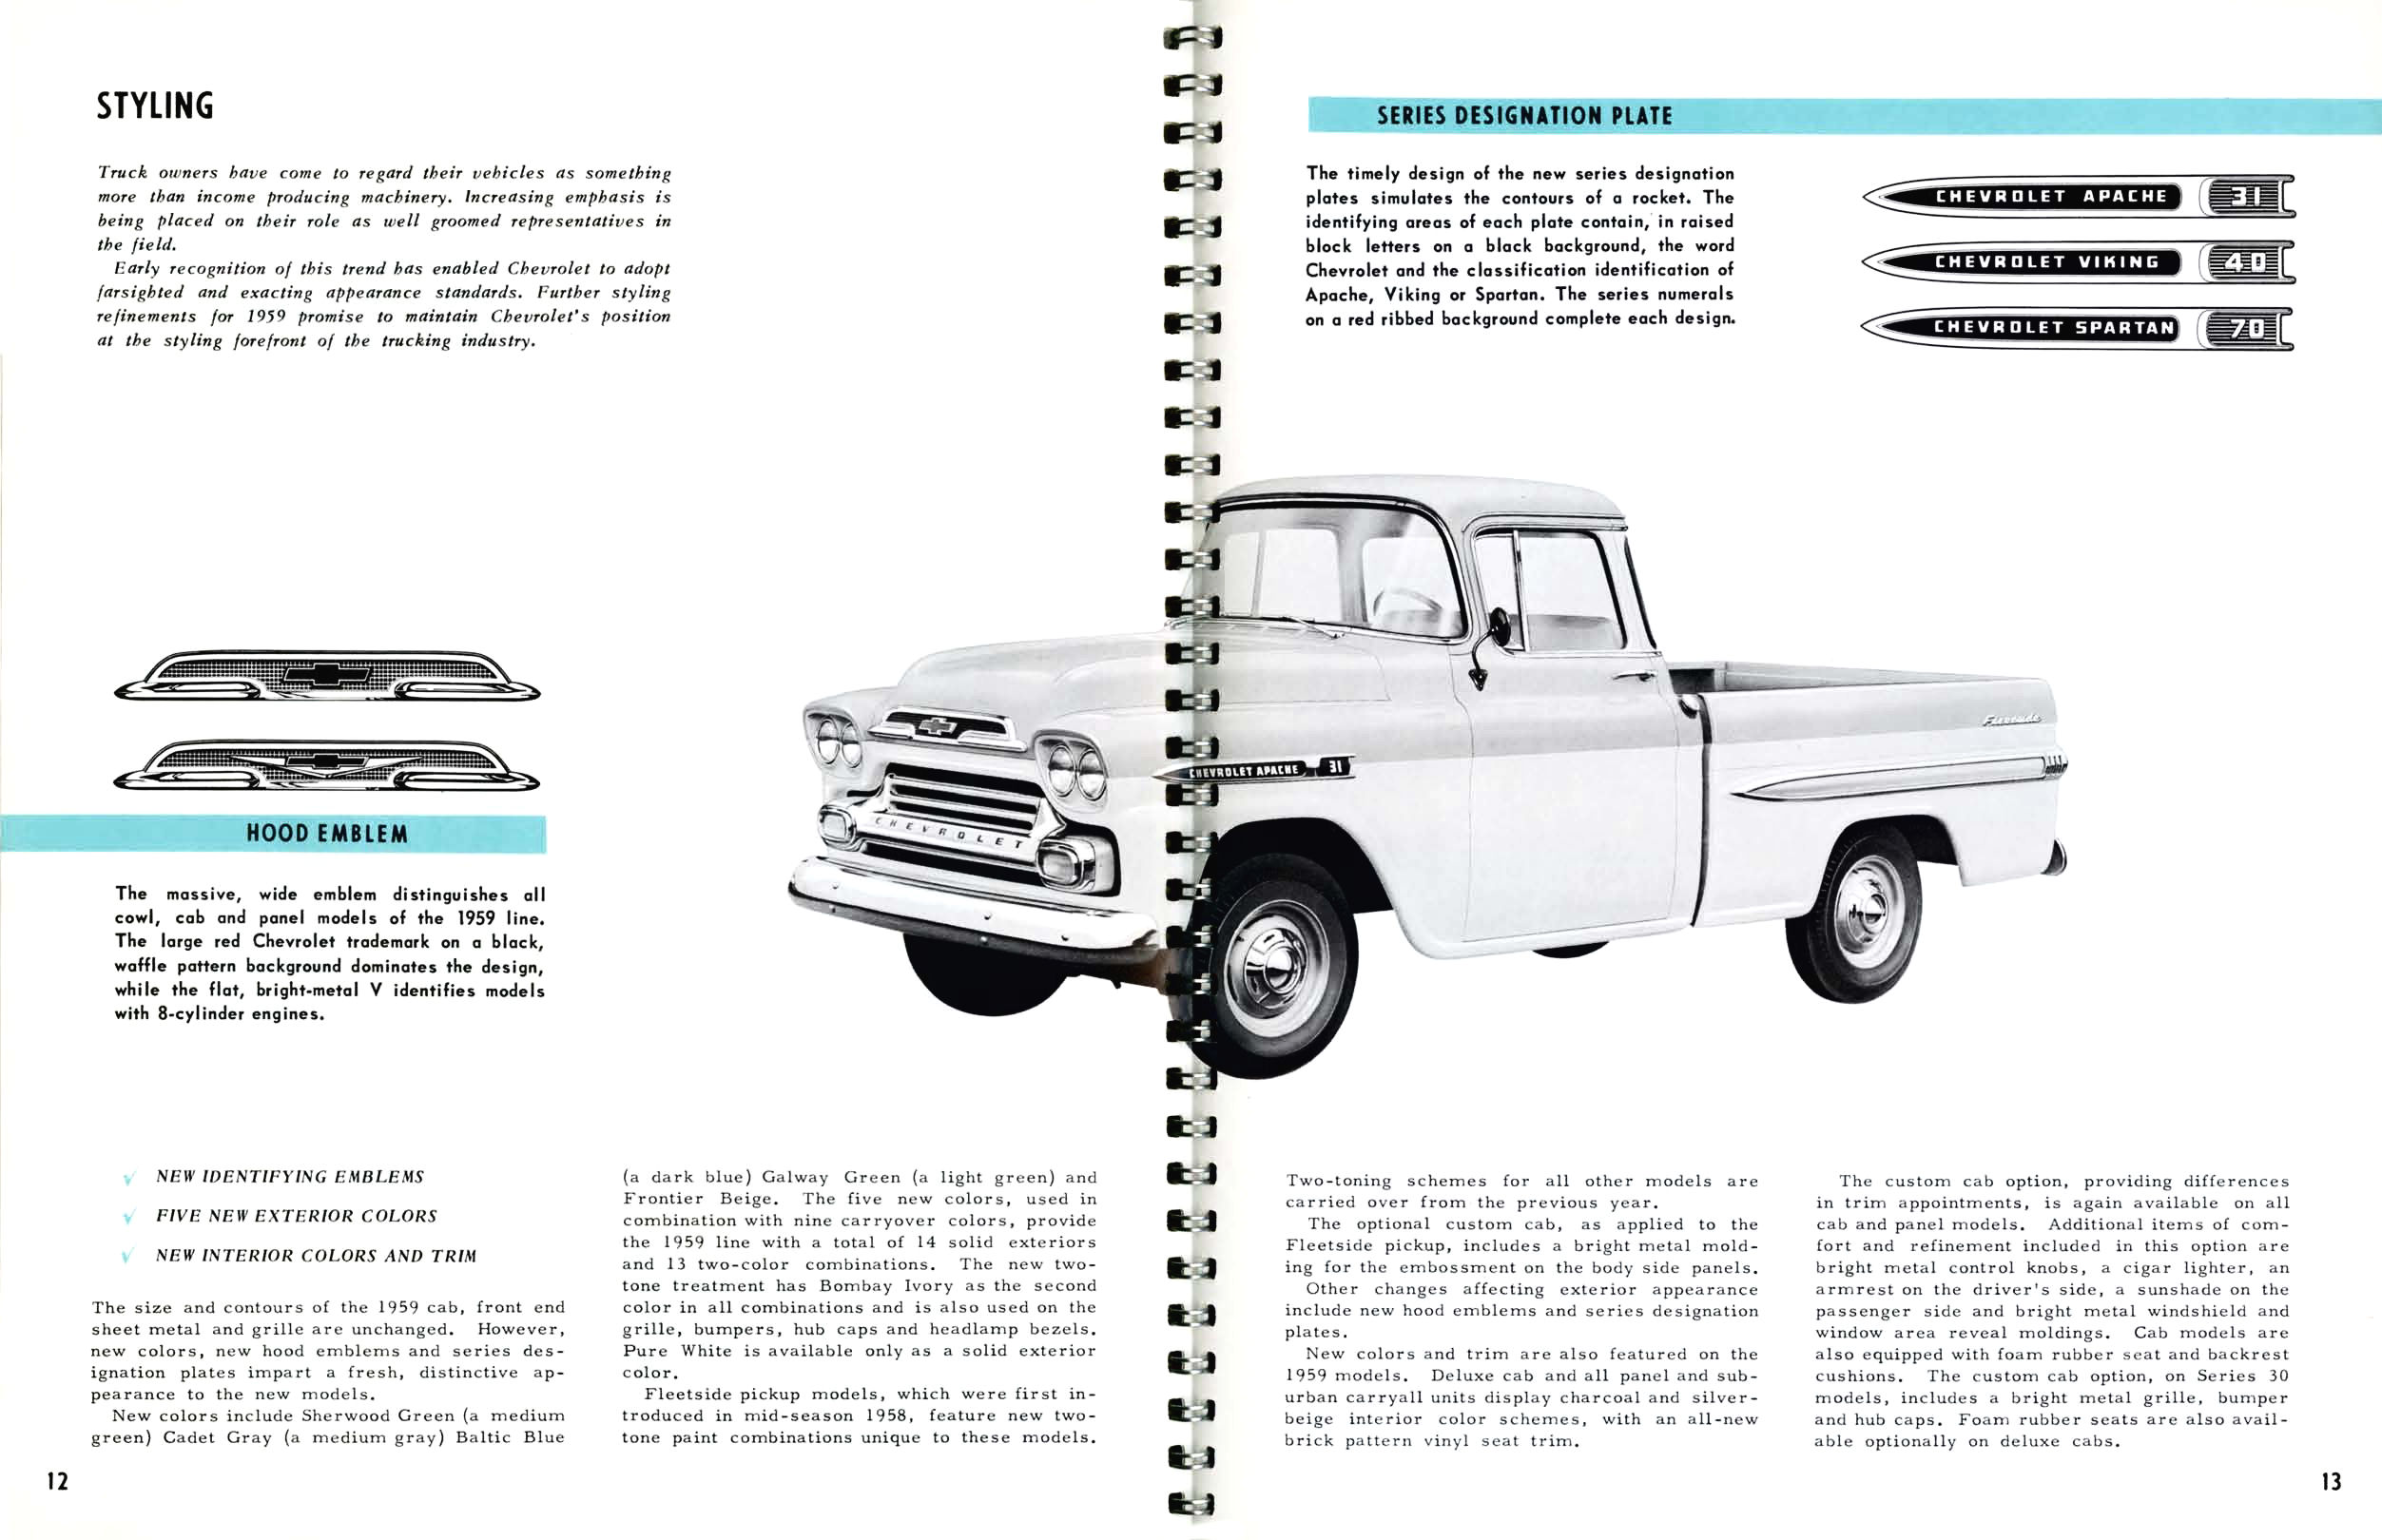 1959 Chevrolet Truck Engineering Features-12-13